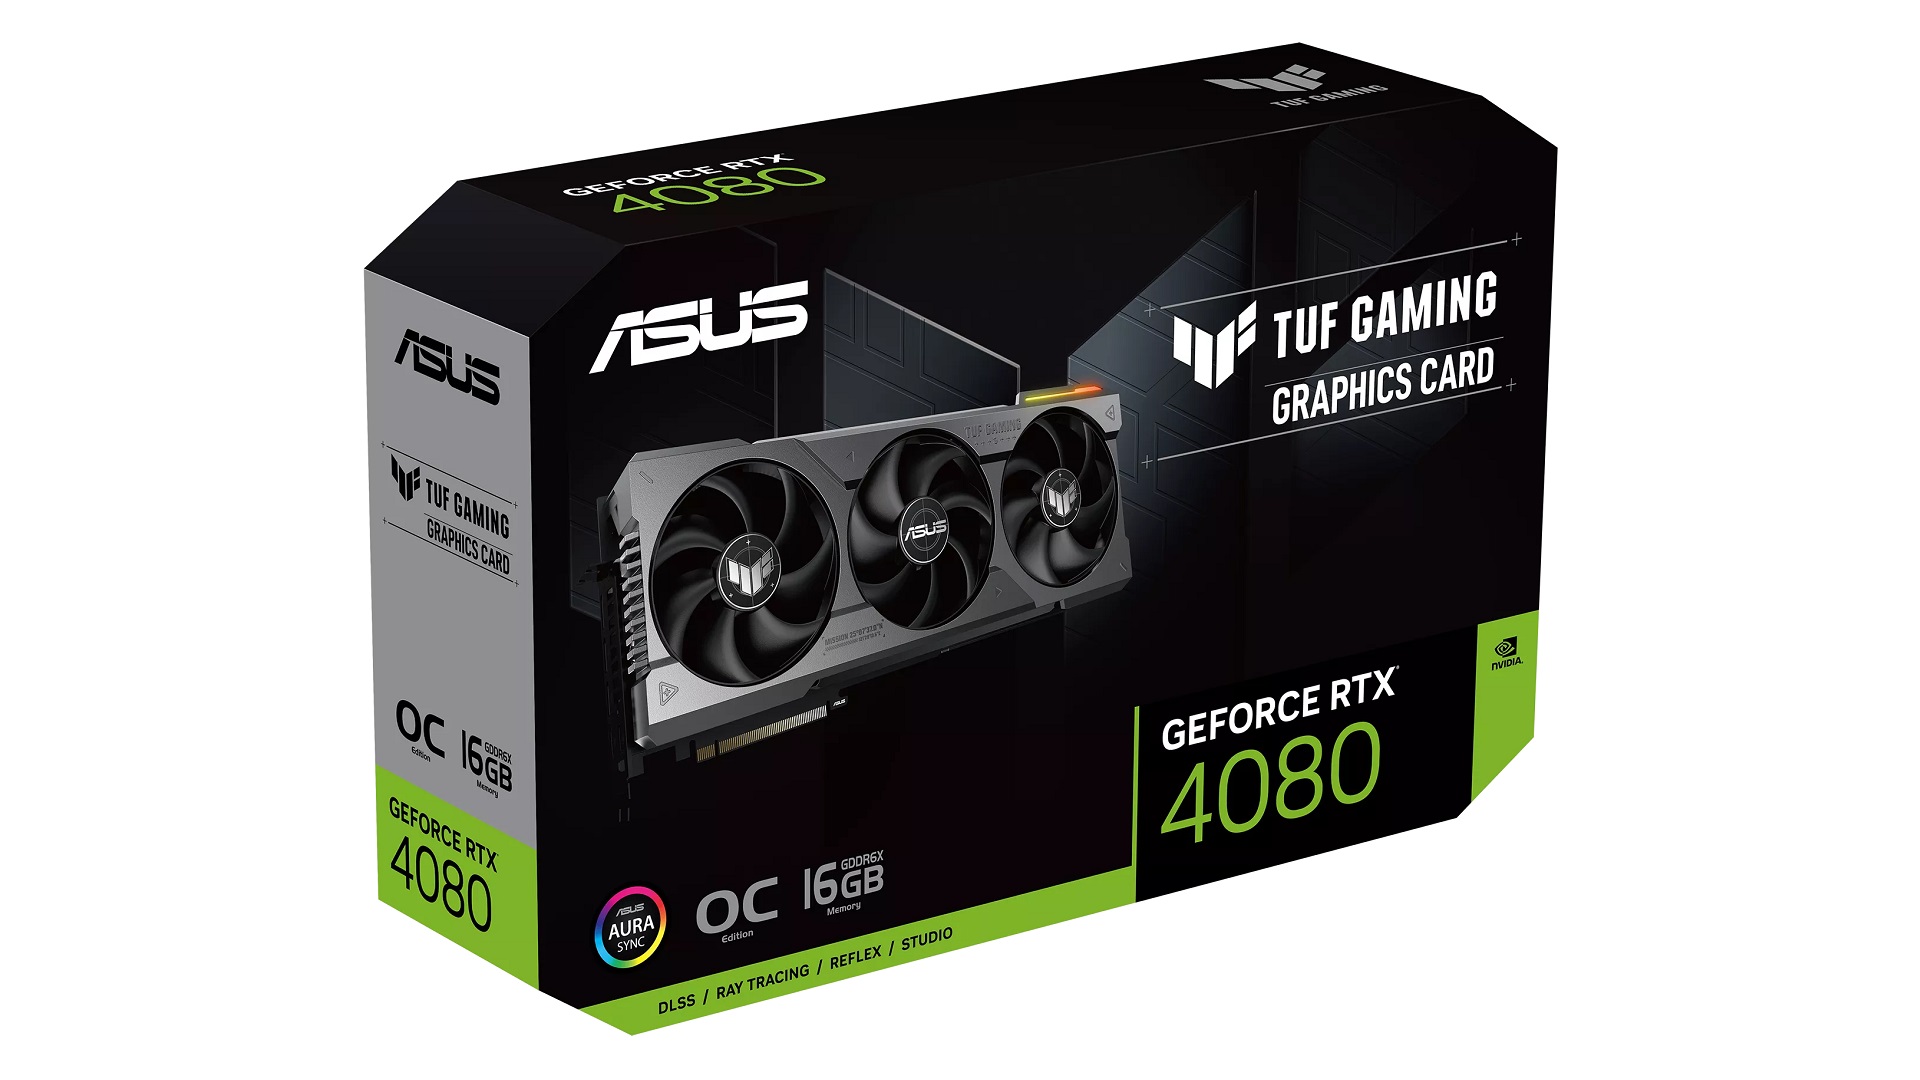 Recenzja ASUS TUF GAMING GeForce RTX 4080 OC. Wydajna karta z mocnym chłodzeniem